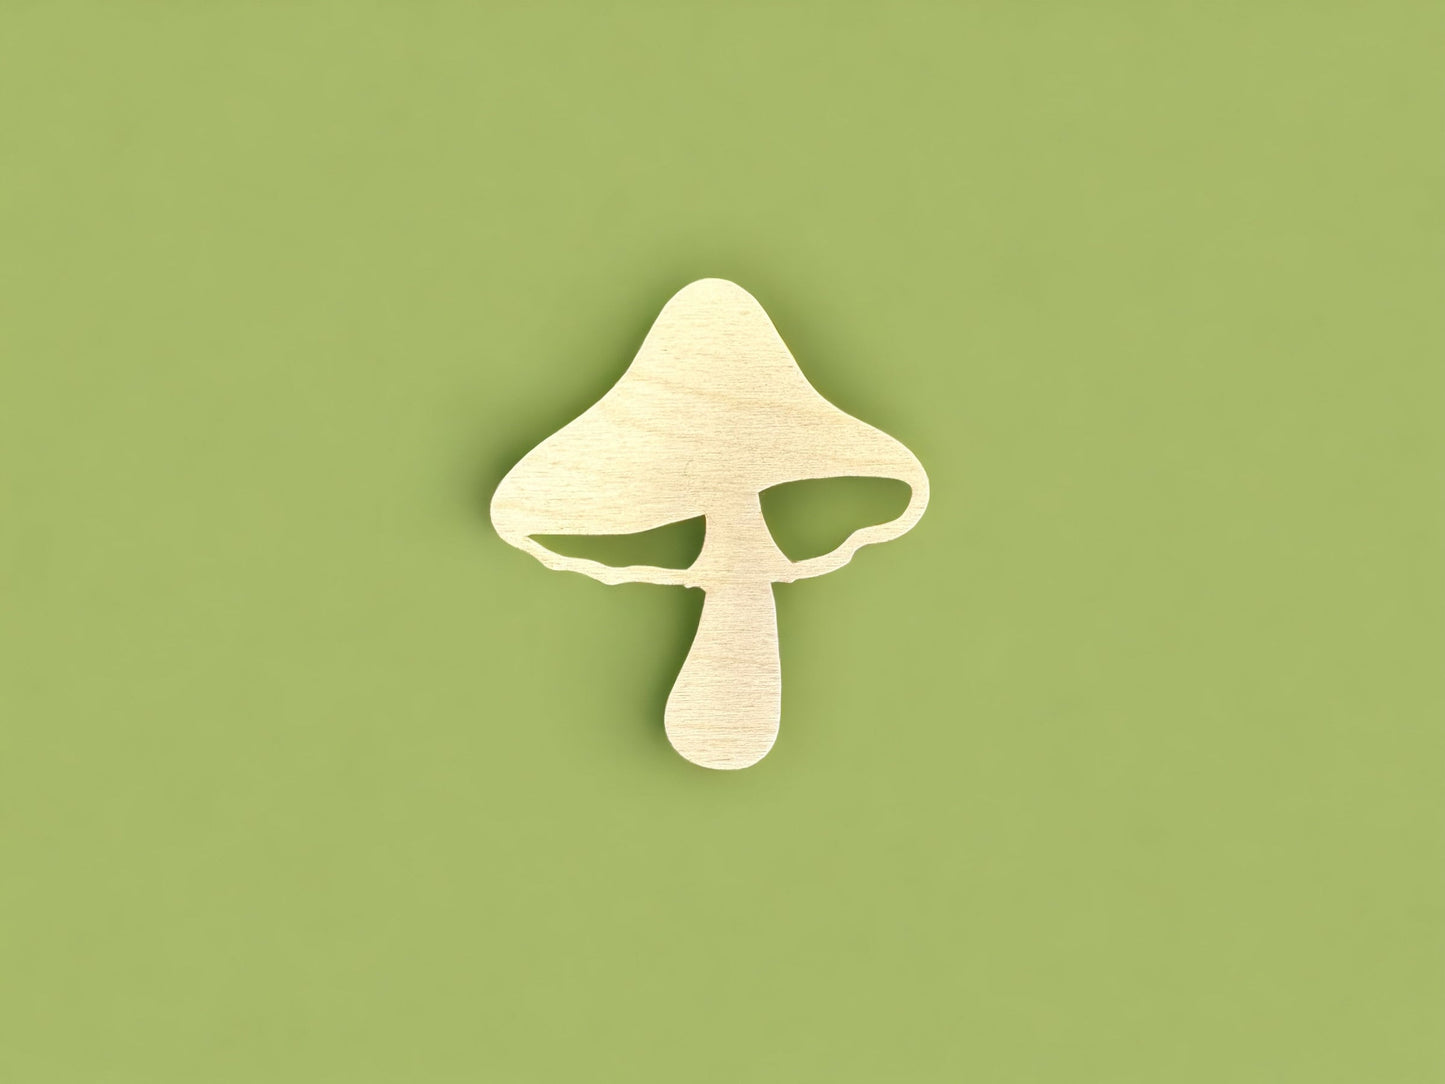 Retro Mushroom Cutout - psychedelic Wood shroom Craft cutout